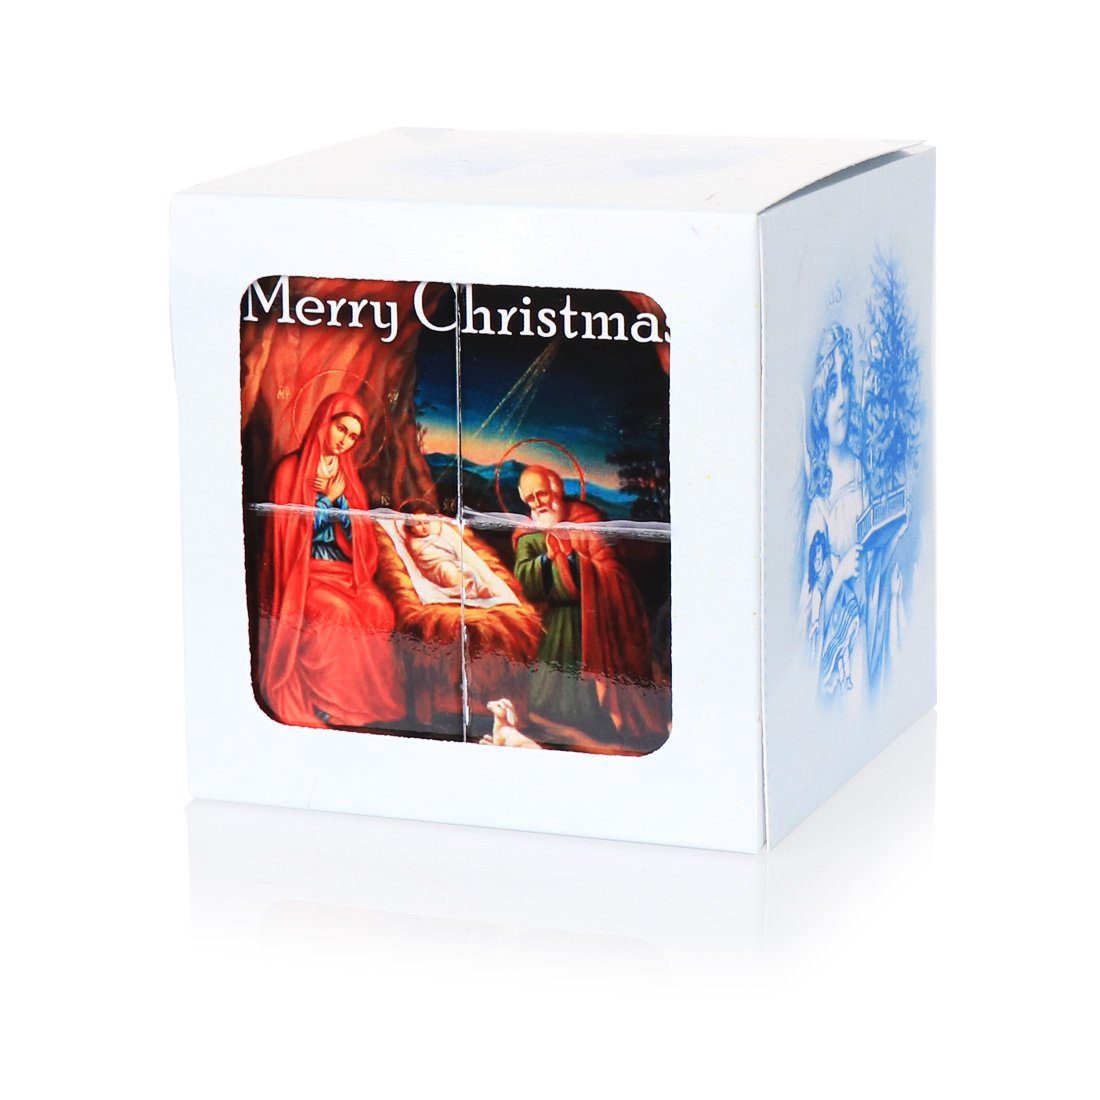 NKlaus Dekofigur Retro Merry Christmas Fotowürfel Cube Weihnachten Dekoration Bilderwür, Made in Germany